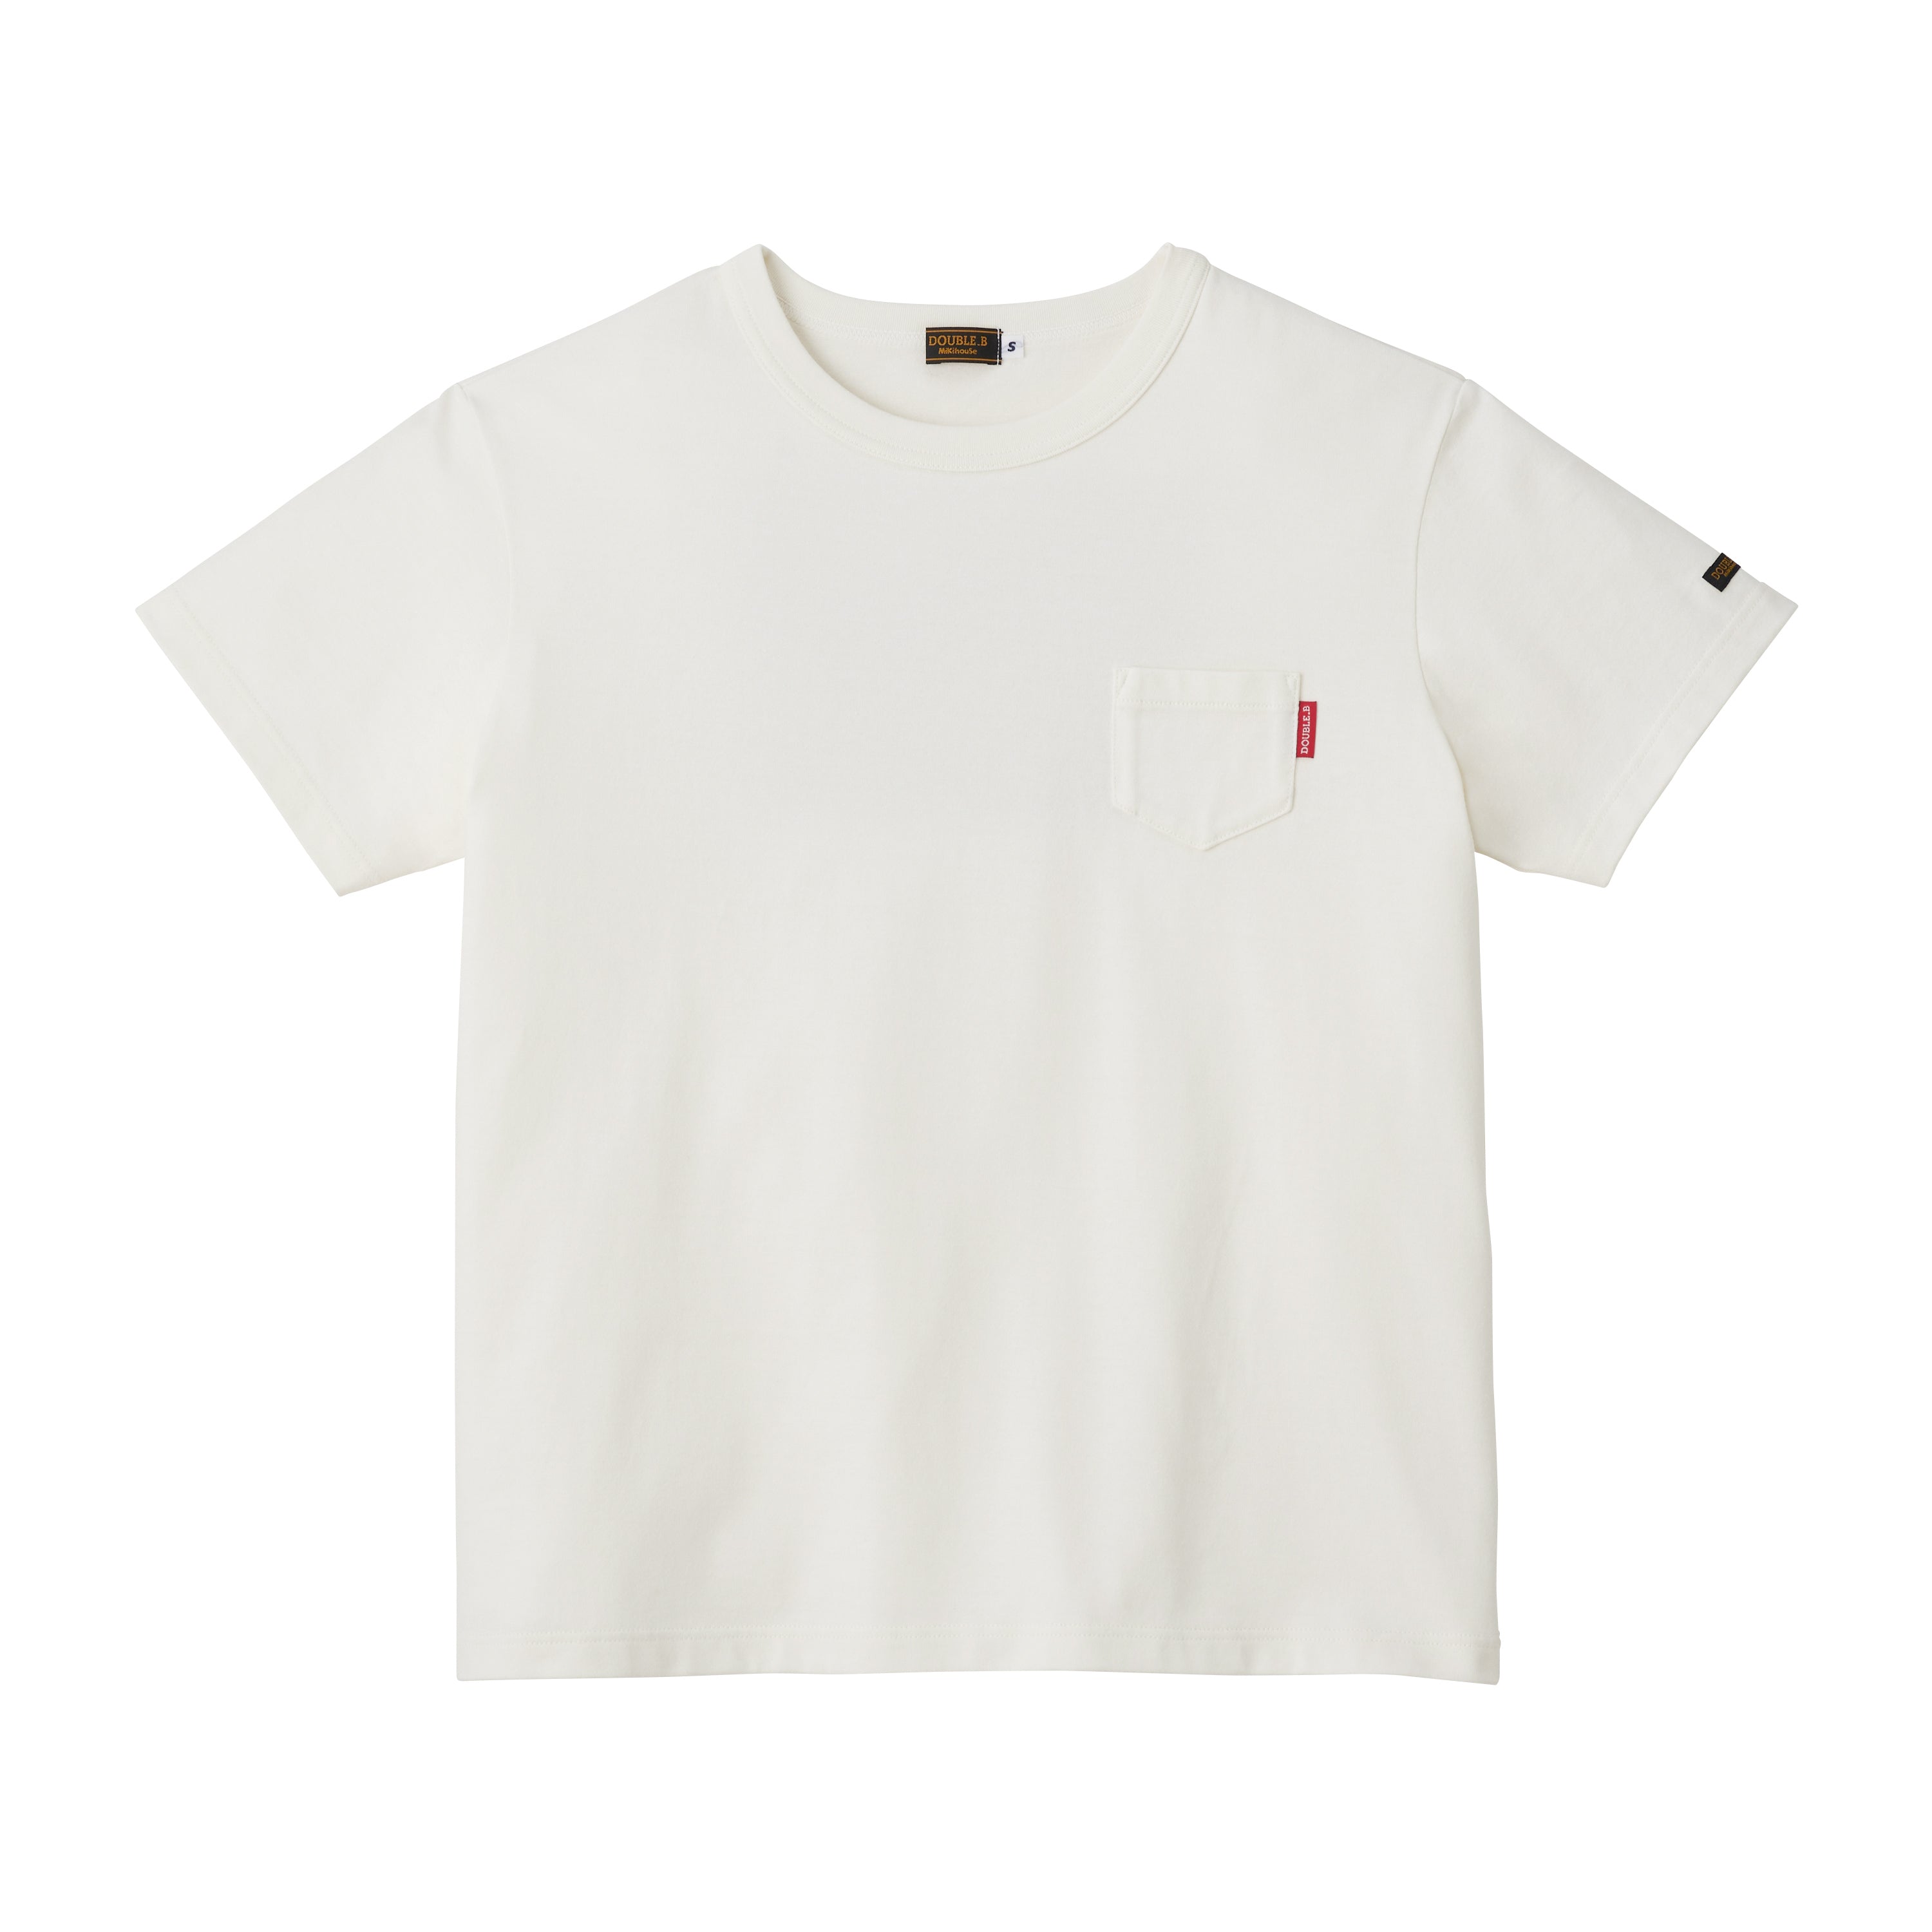 Tシャツ/カットソー☆ダブルB Tシャツ  3枚セット100